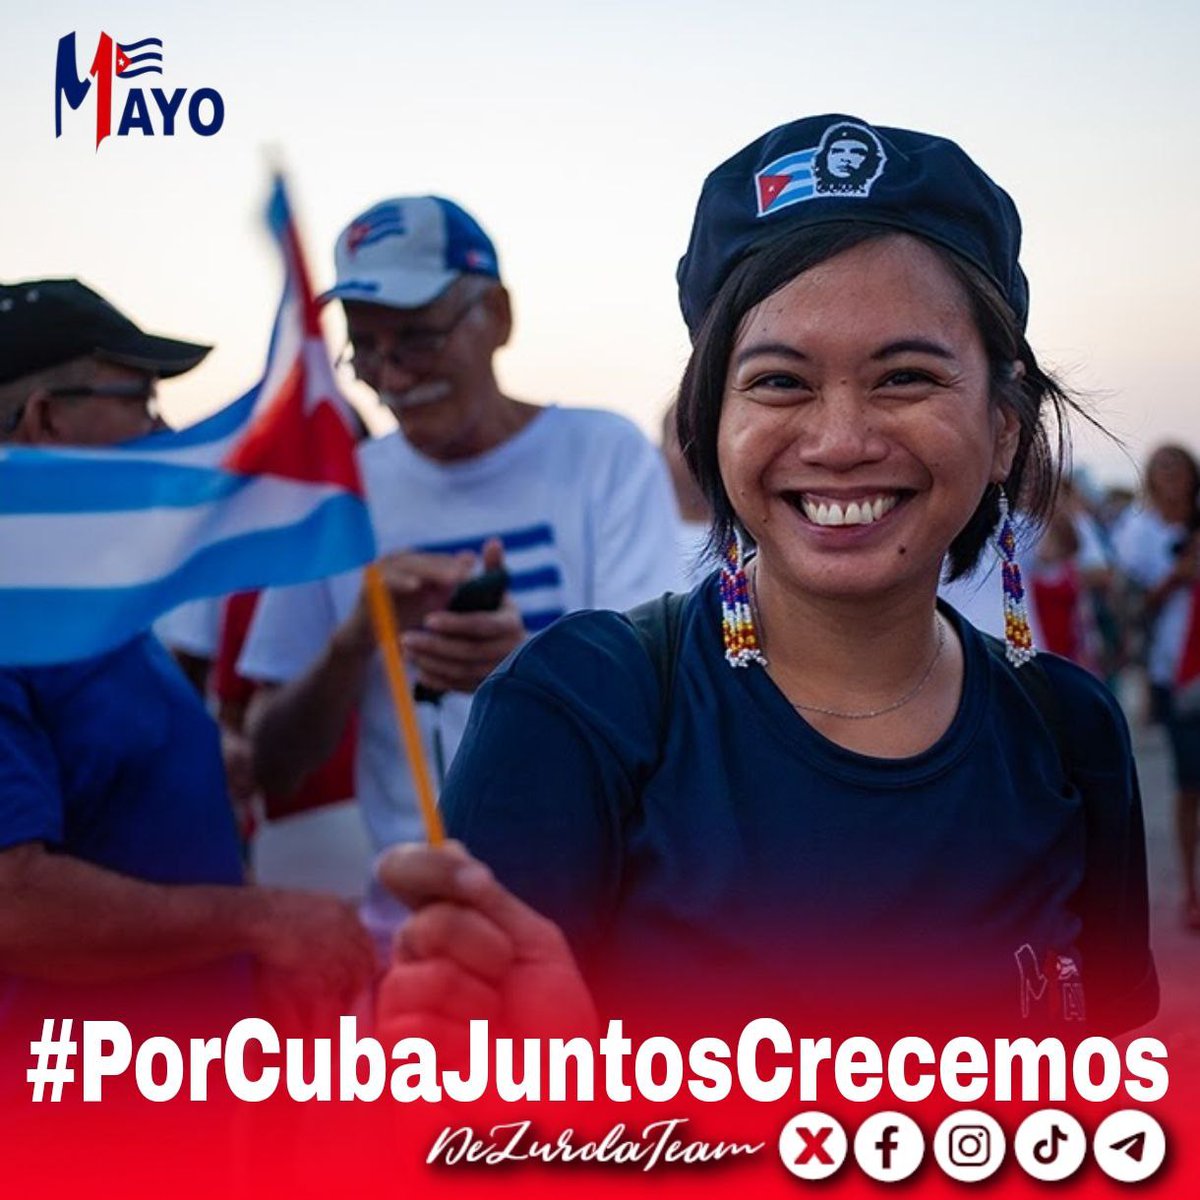 Buenos días 🇨🇺
Ya casi vamos calentando los motores para este #1Mayo.
#UnLatidoPor te invita a encontrar un desfile repleto de cubanos festejando que #PorCubaJuntosCreamos el Socialismo!  

#DeZurdaTeam